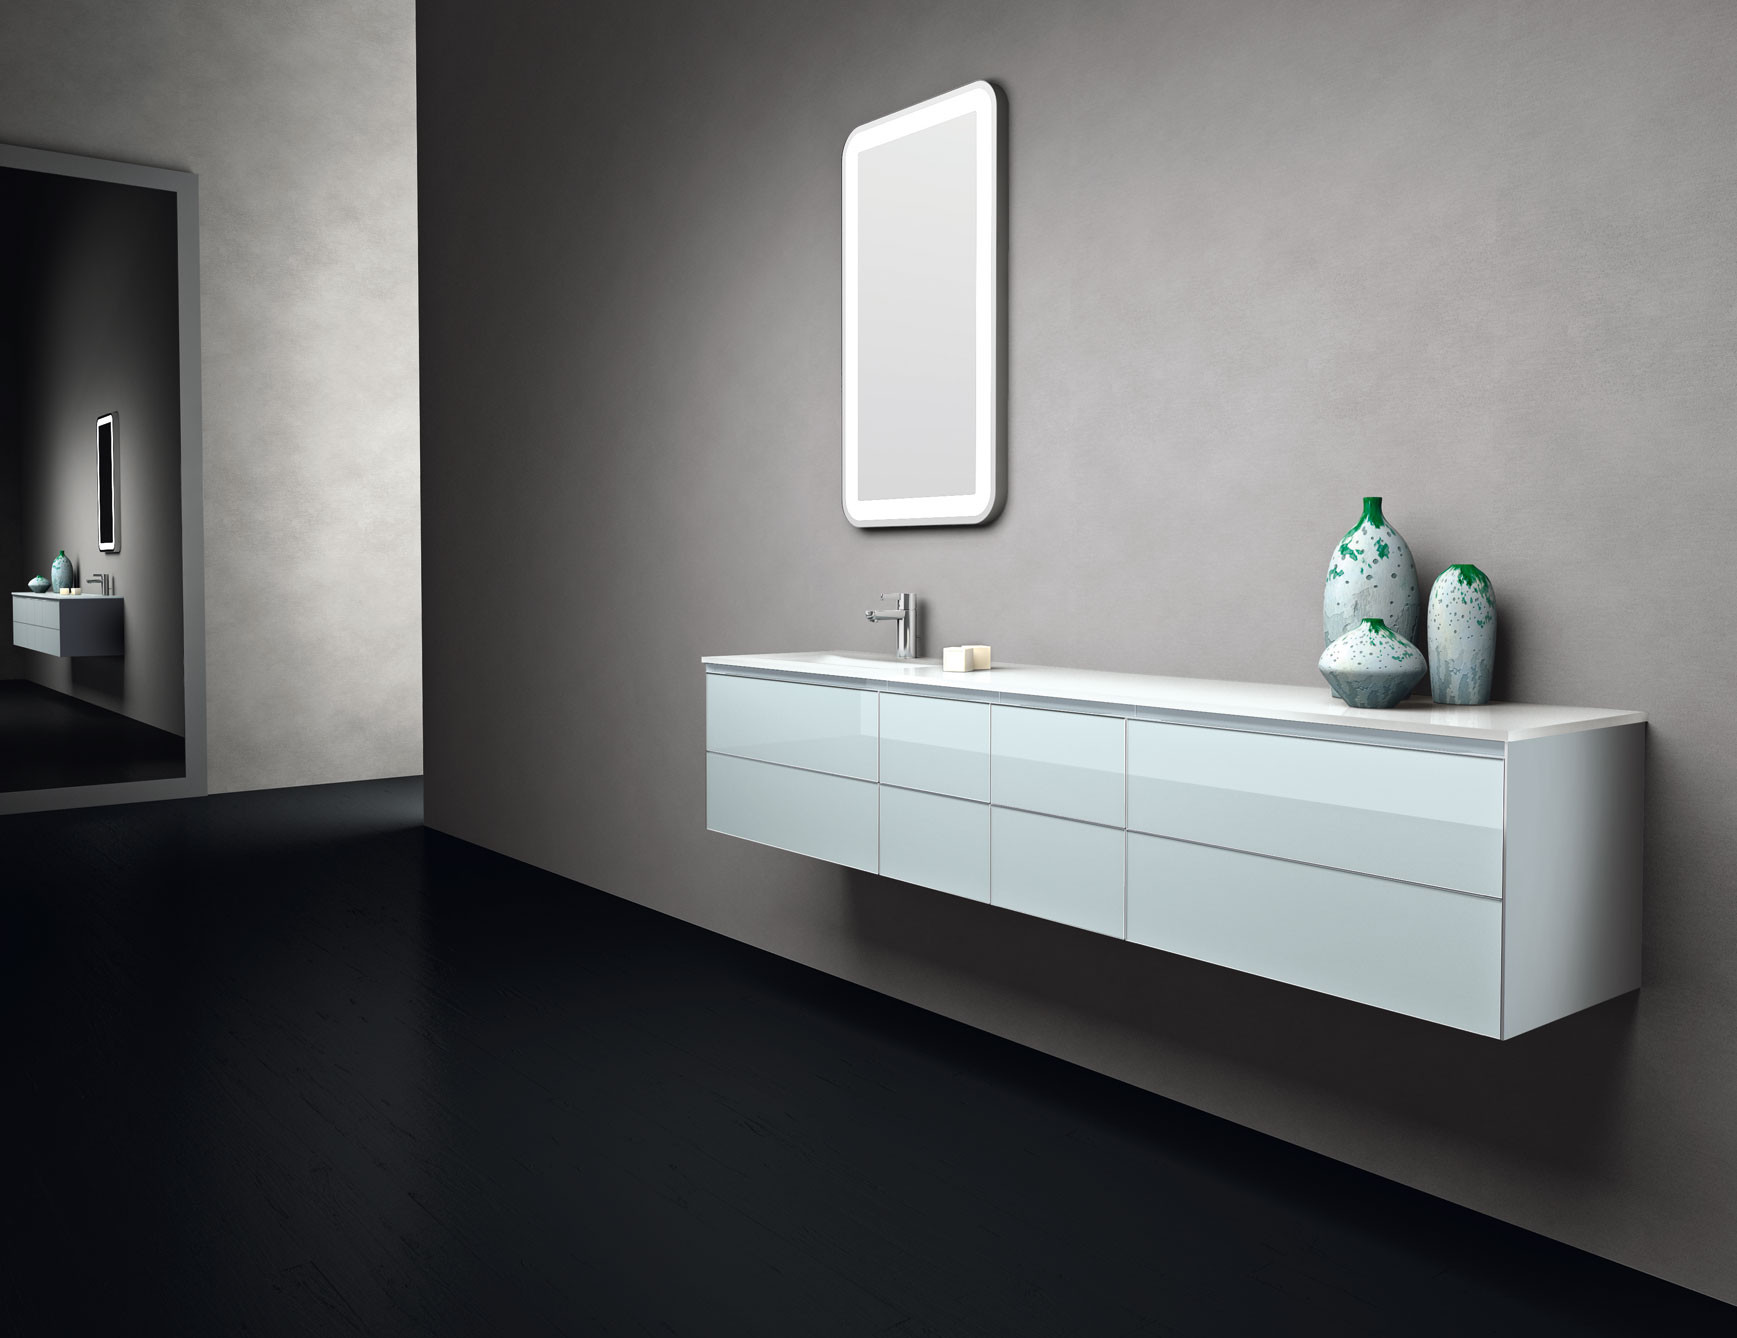 Designer Bathroom Vanities
 Infinity IN1 Modular Italian Designer Bathroom Vanity in